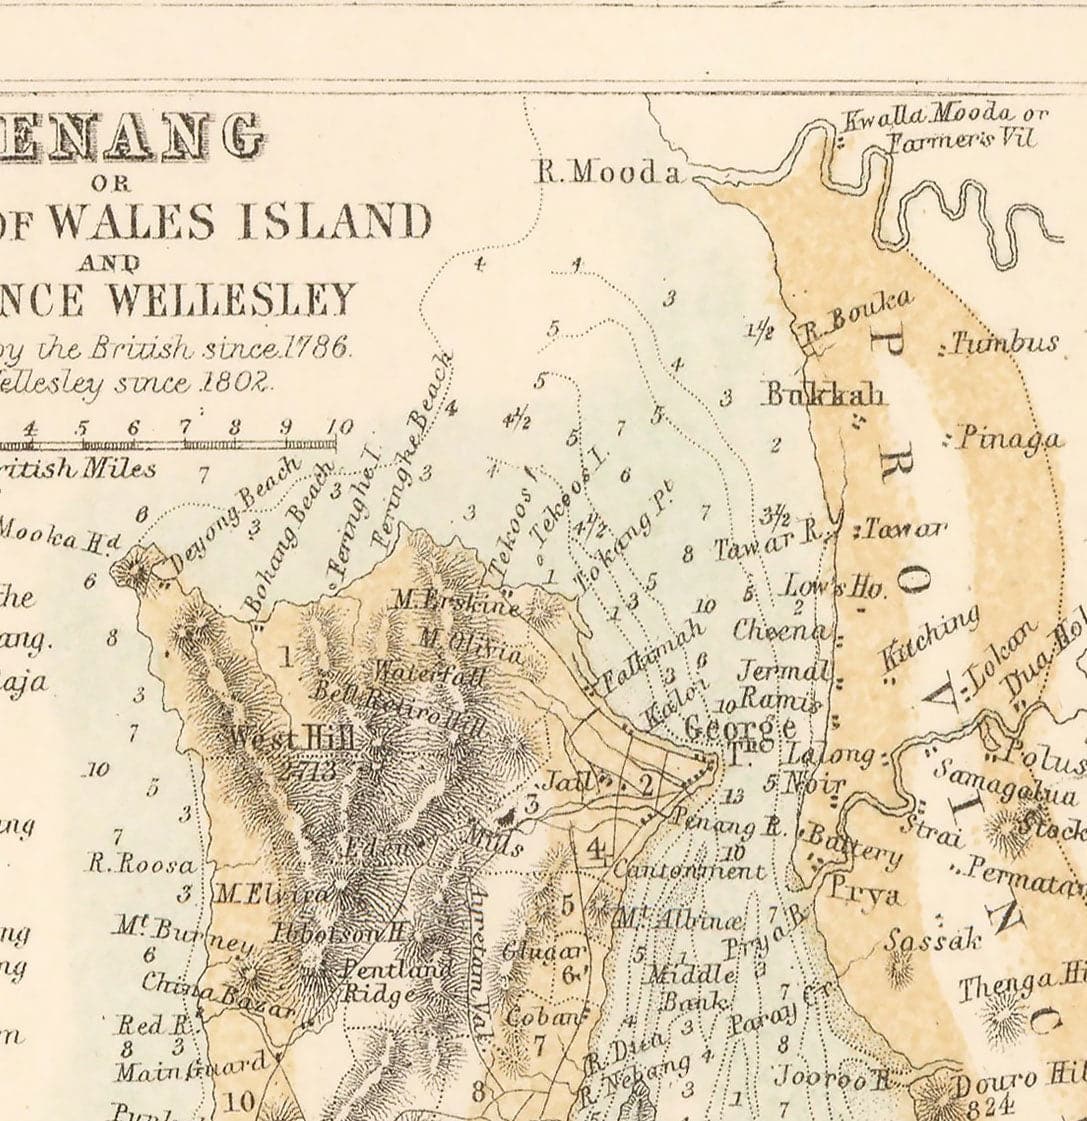 Ancienne carte coloniale de la péninsule de Malaisie, 1860 par Fullarton - Singapour, Penang, Malacca, Naning - Colonies britanniques